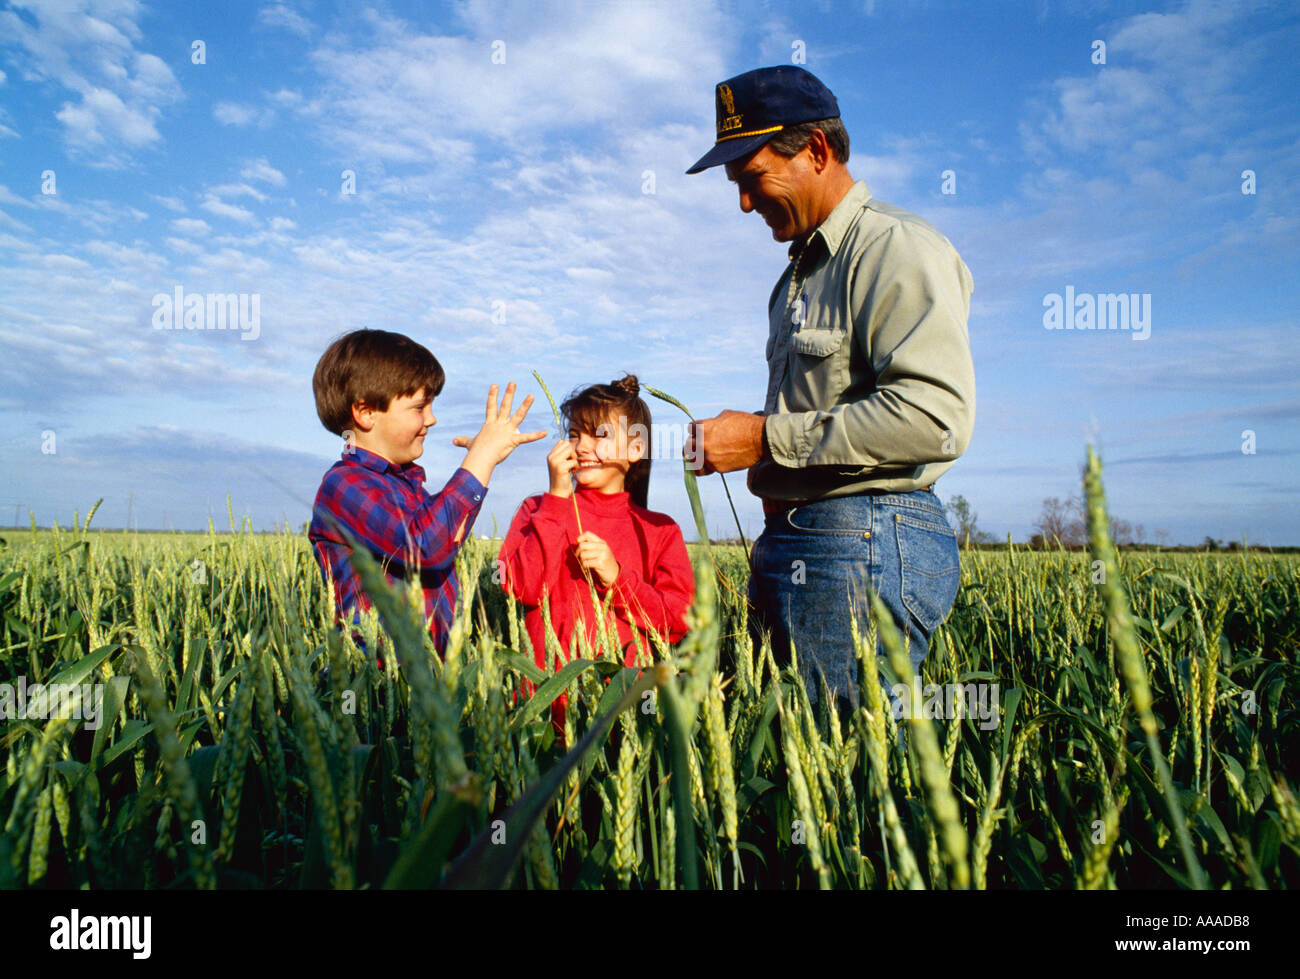 Agricultura - granja familiar de la vida; un agricultor inspeccionara su cosecha de trigo con sus hijos / West Brooklyn, Illinois, EE.UU. Foto de stock